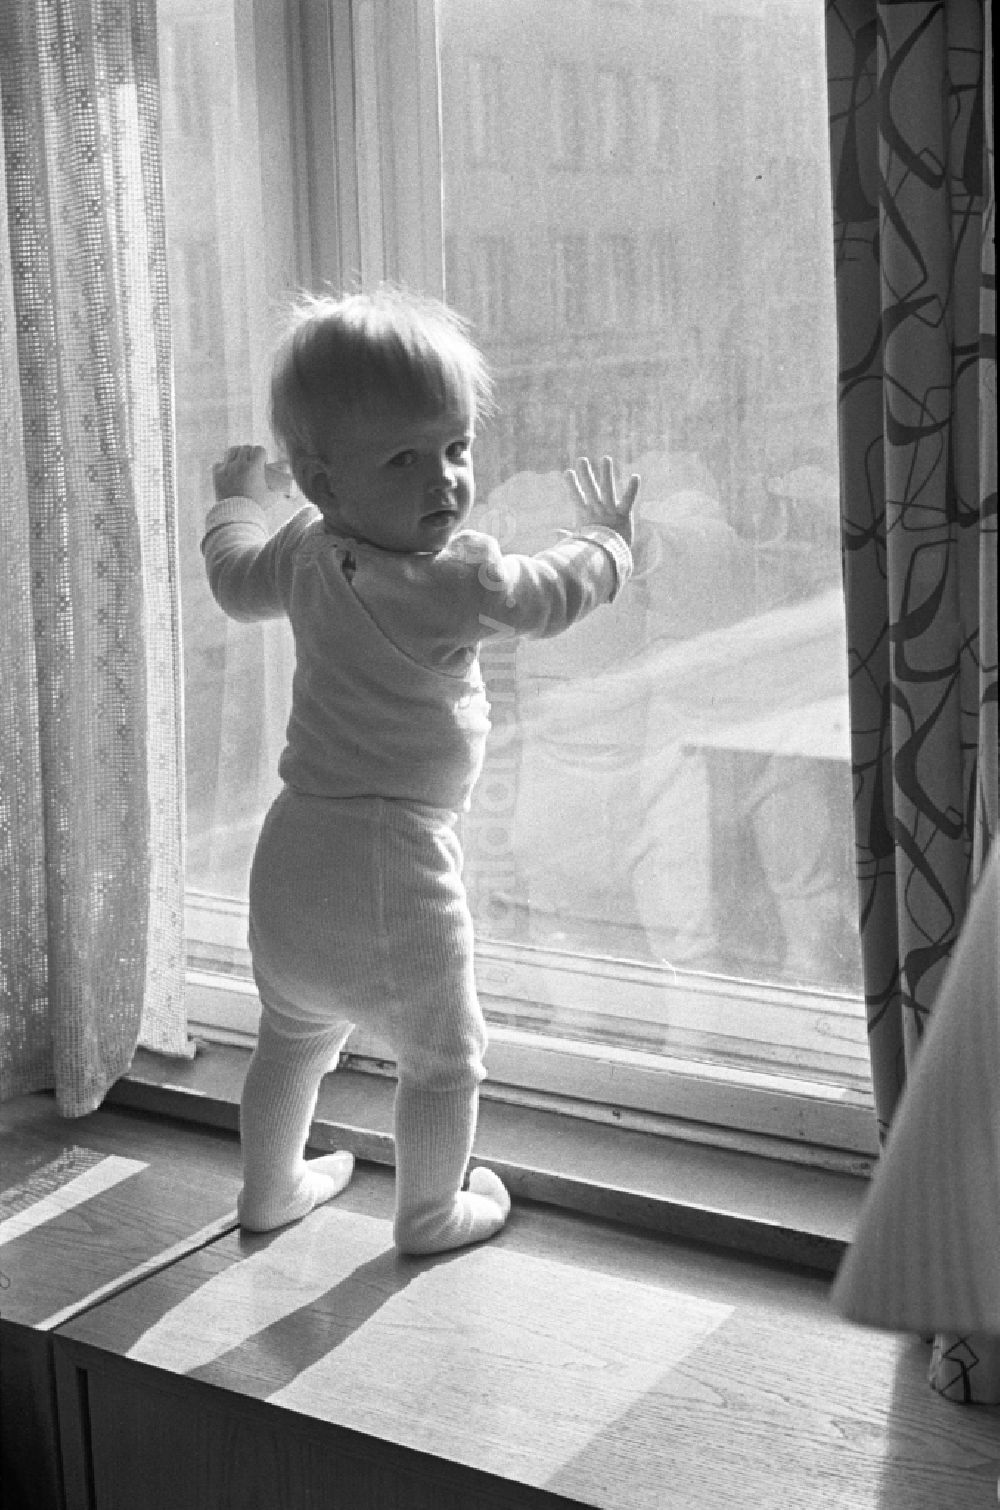 DDR-Fotoarchiv: Berlin - Friedrichshain - Ein kleines Kind mit Strumpfhosen steht auf der Fensterbank in Berlin